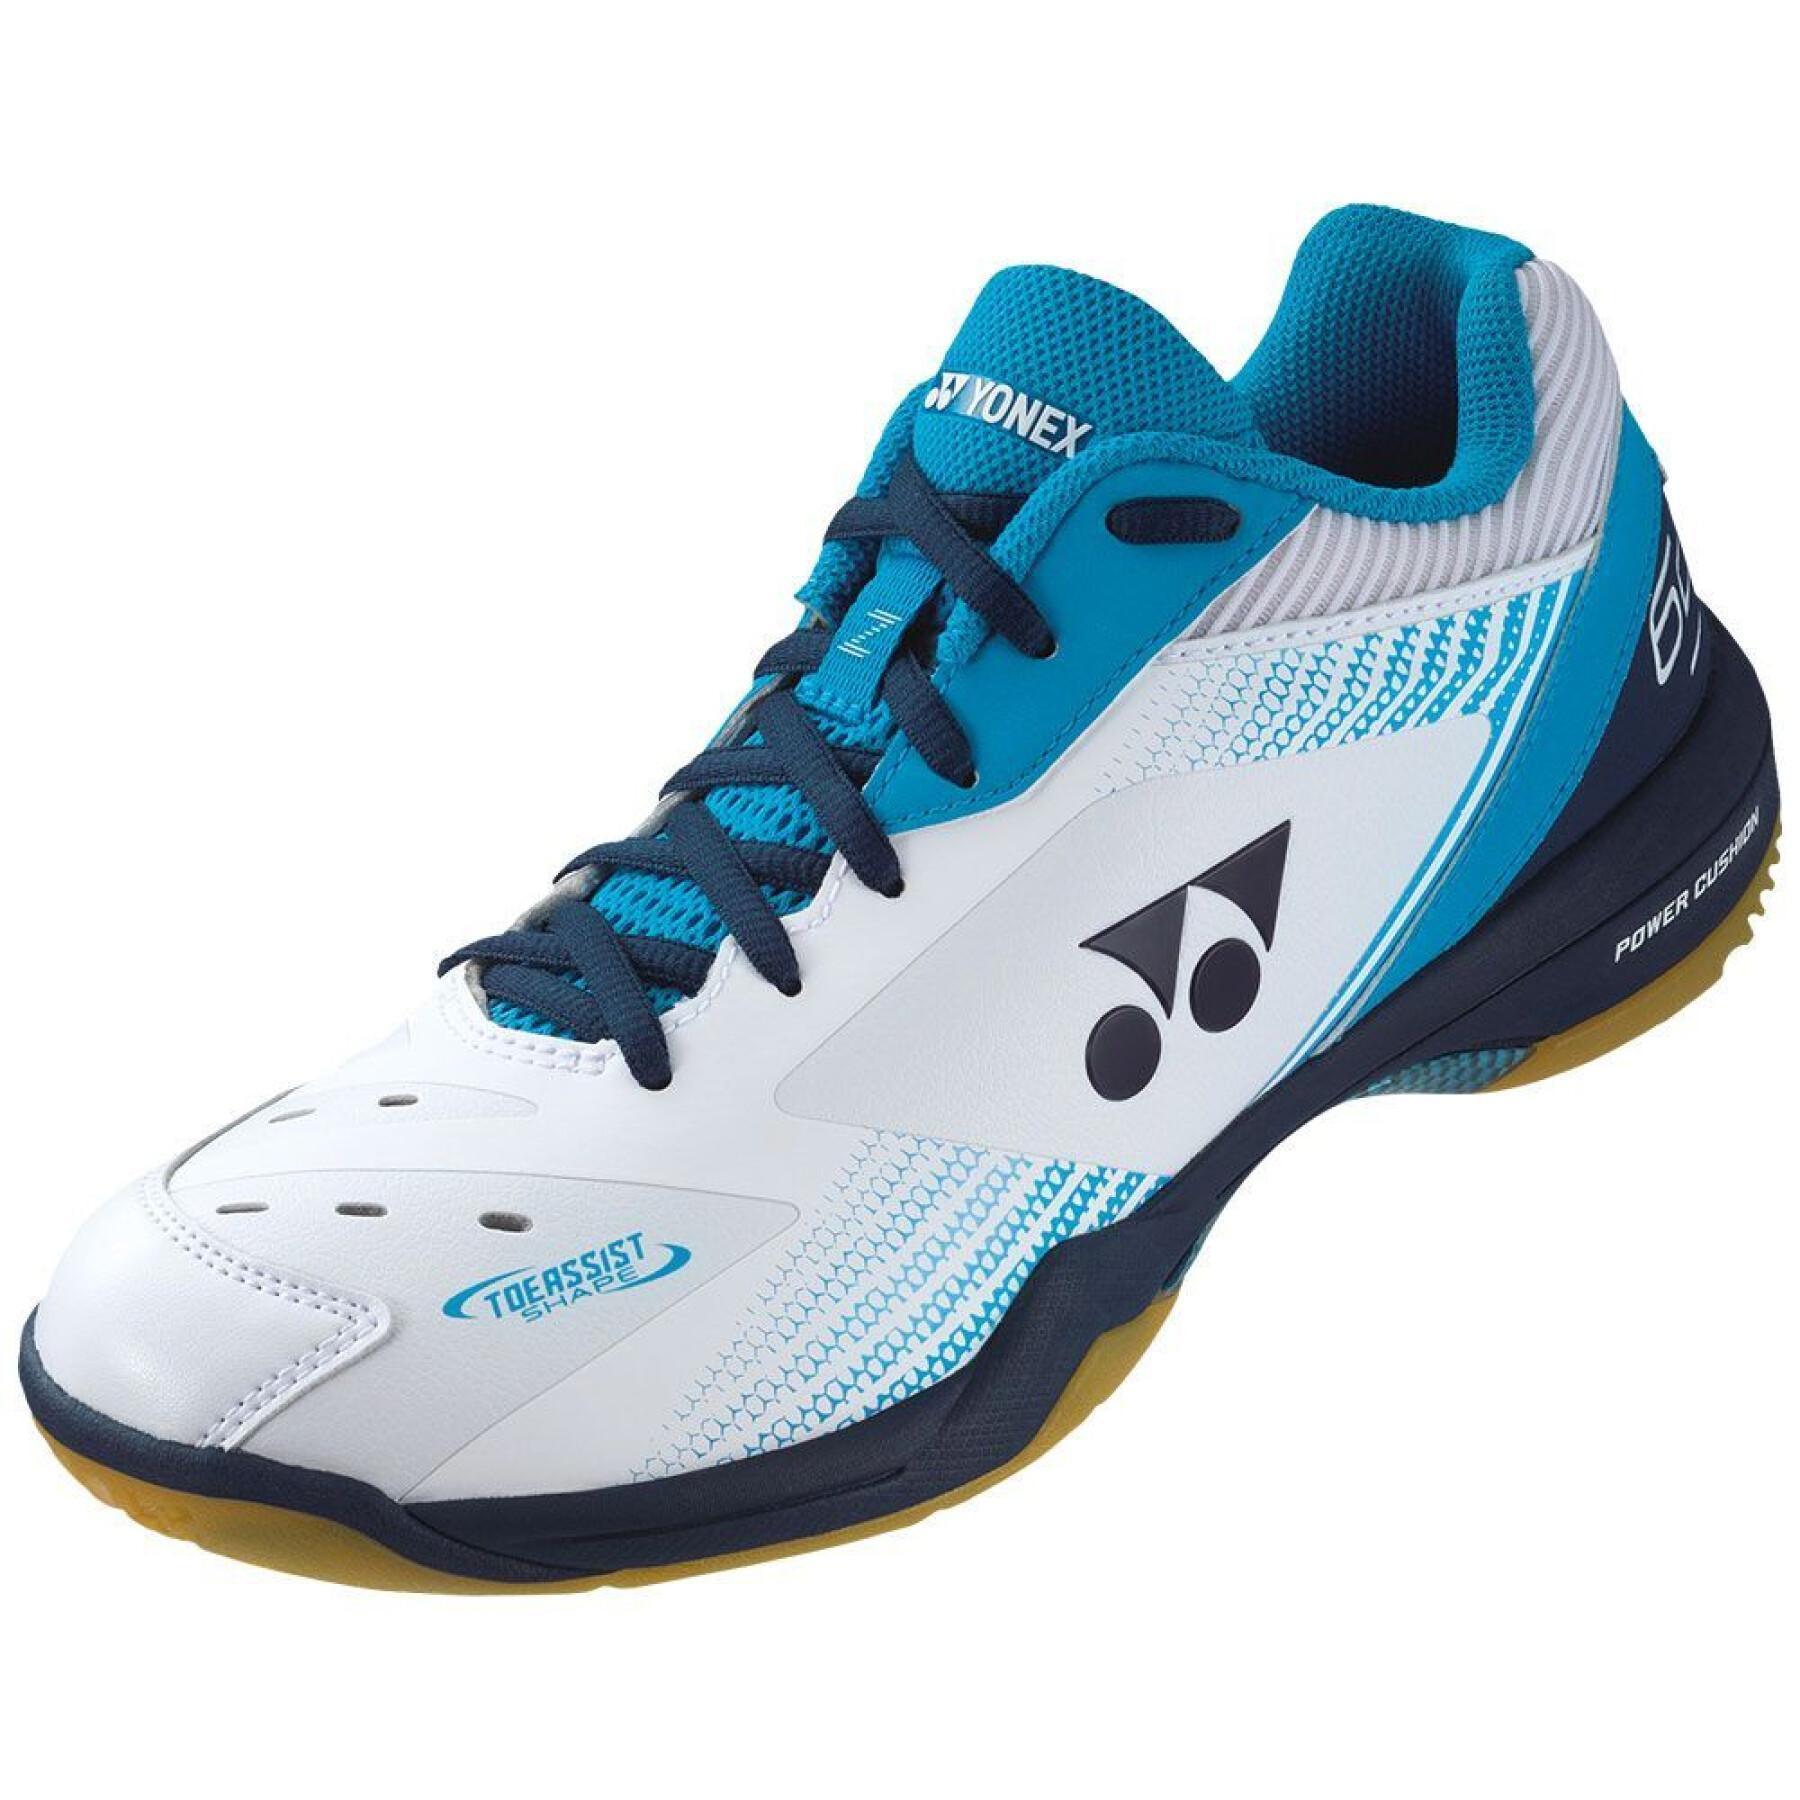 Chaussures de badminton Yonex PC 65 Z